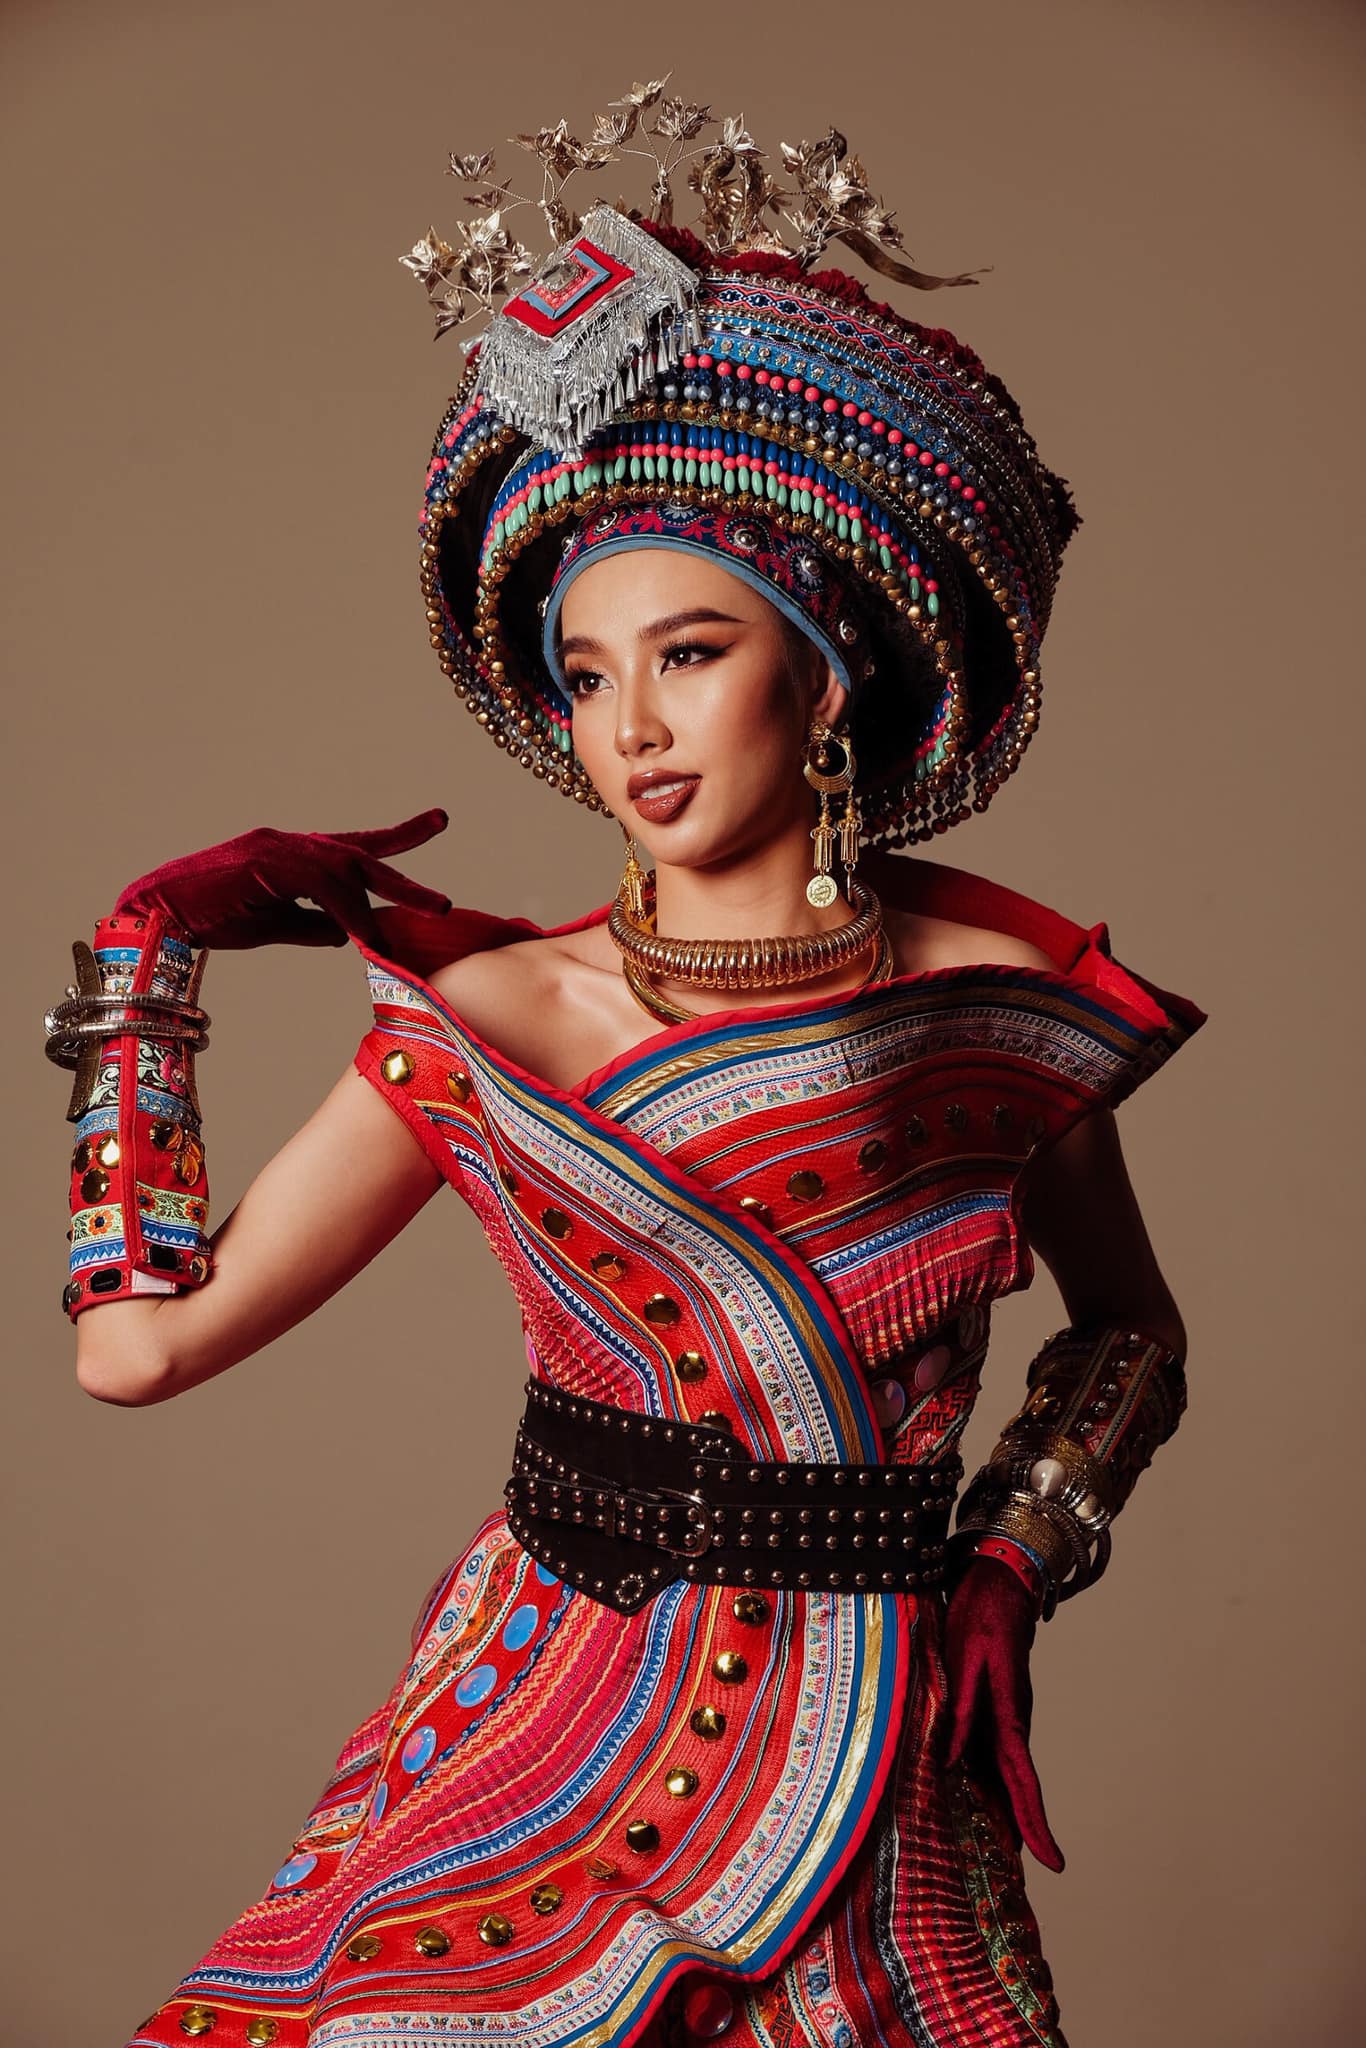 Hoa hậu Hòa bình Thái Lan bị chỉ trích vì mặc váy hở nội y